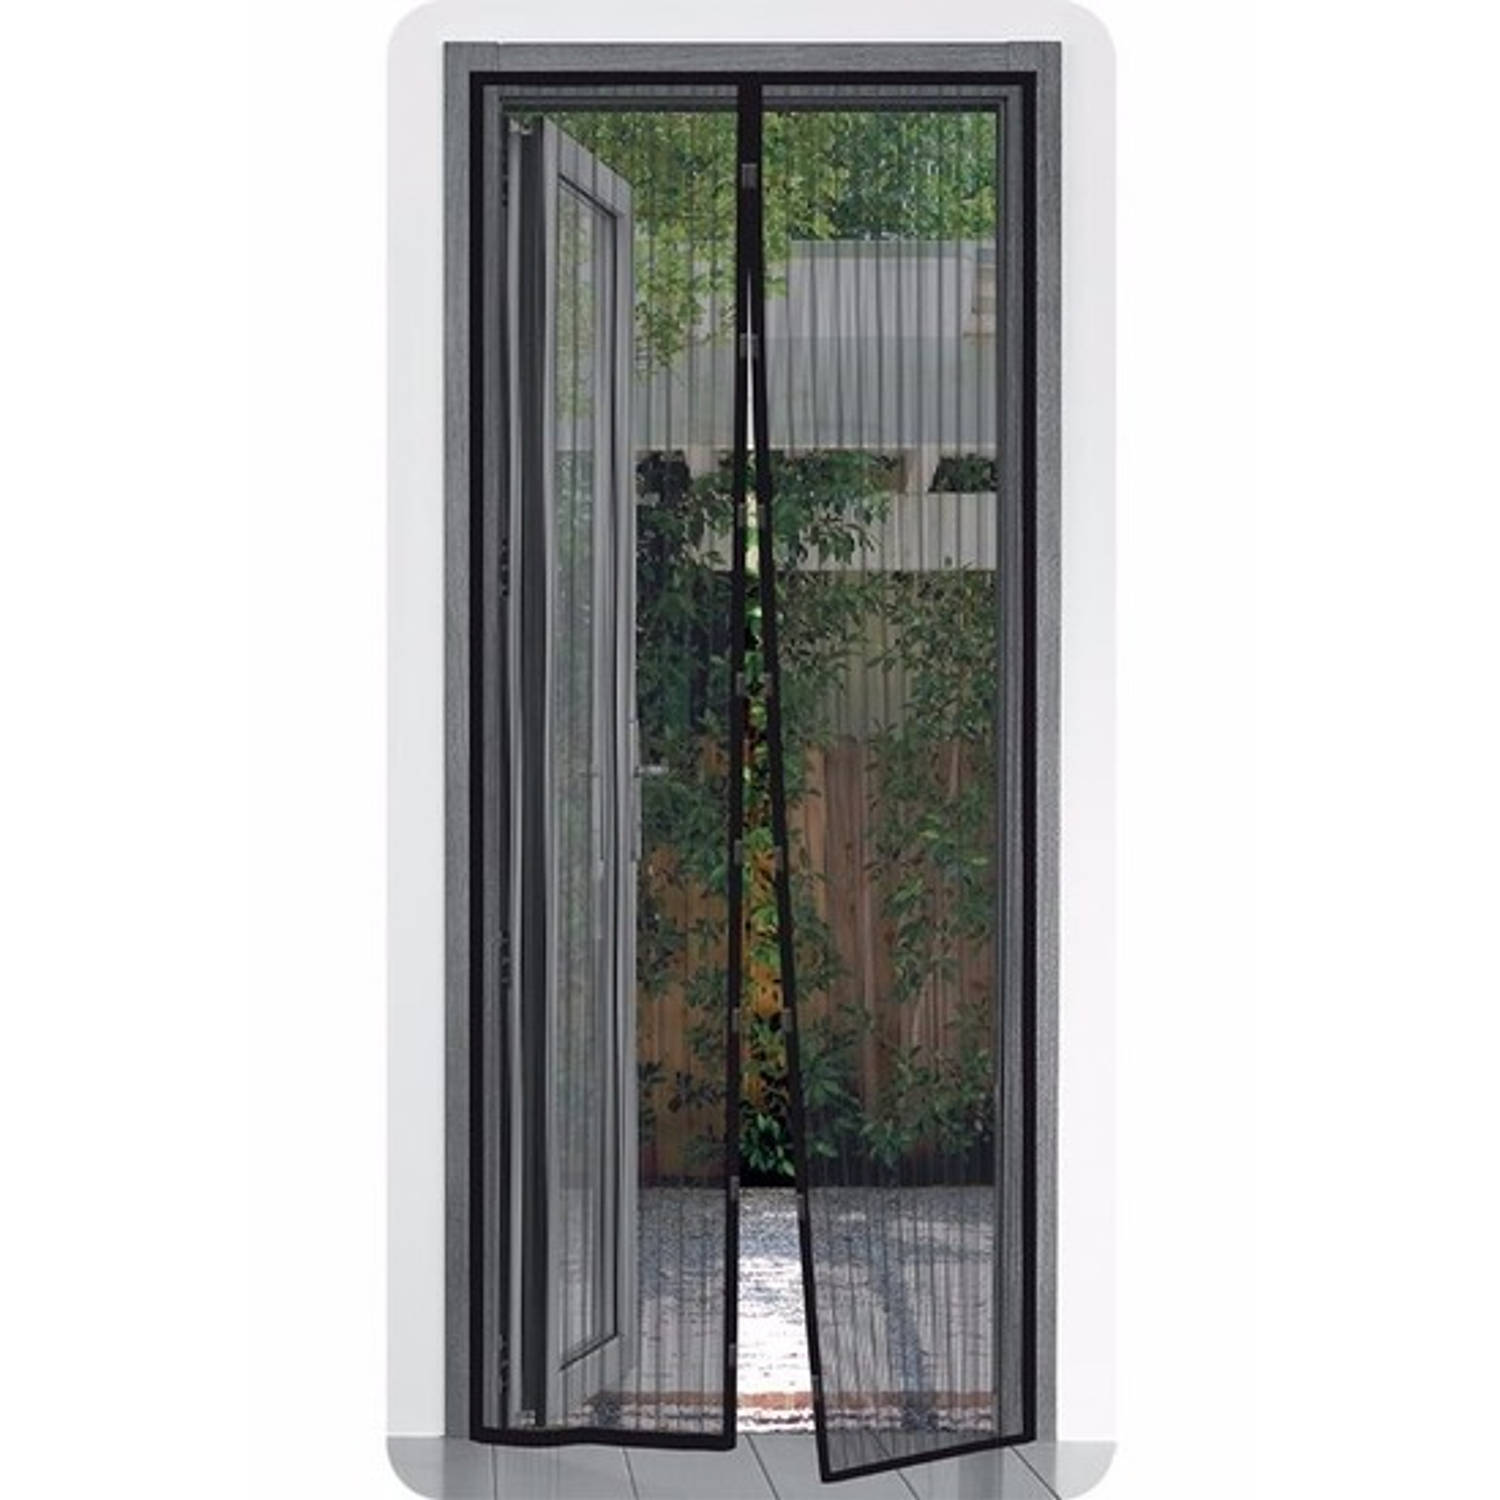 voordelig Keelholte haalbaar Opzet deurhor met magnetische sluiting 210 x 50 cm - Deurhorren | Blokker